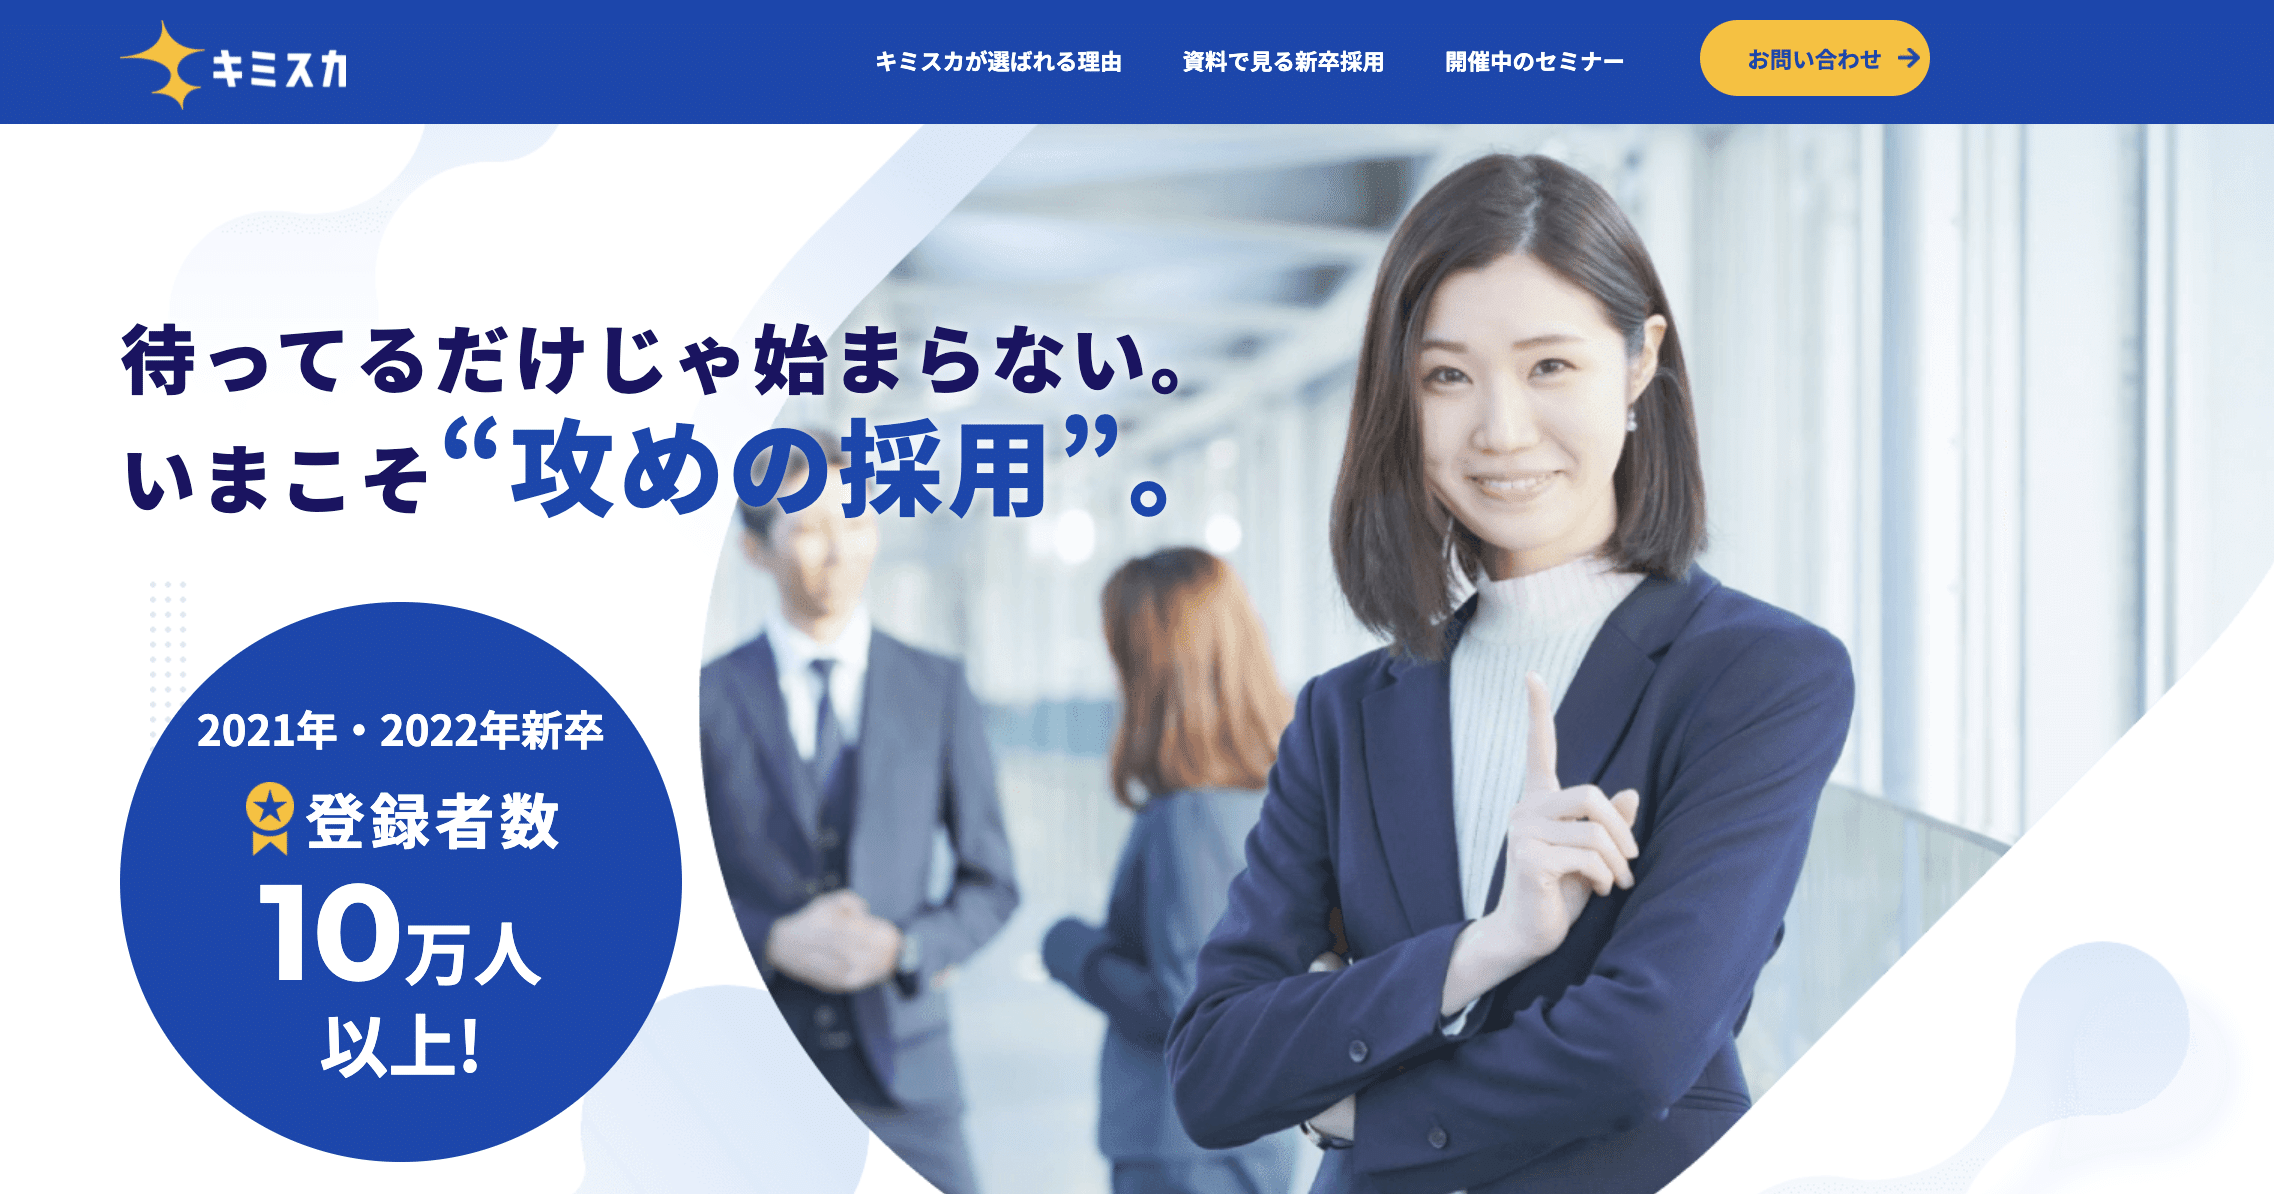 kimisuka_recruitment